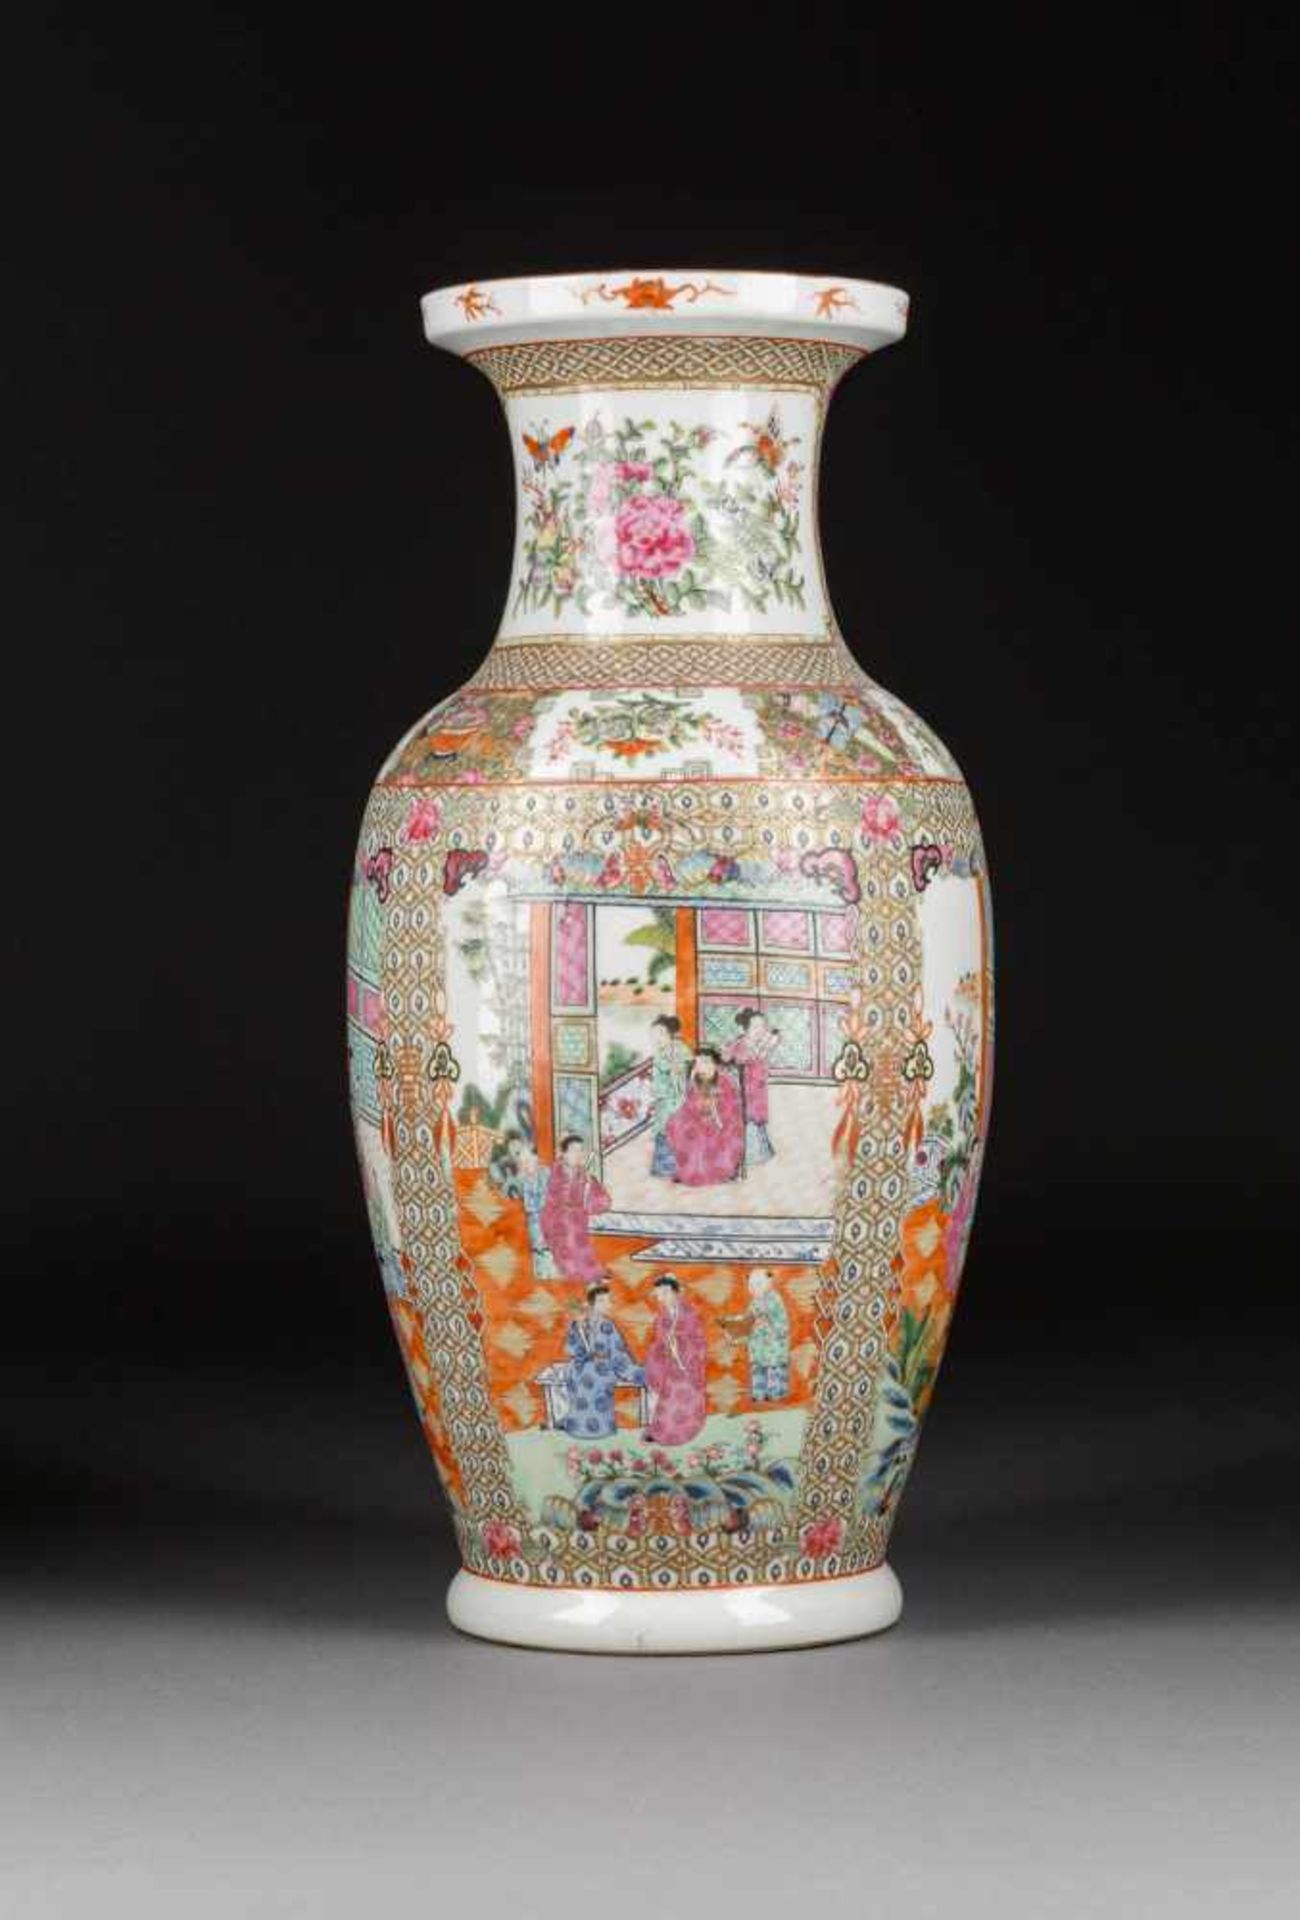 KANTON-VASE MIT FIGÜRLICHEN SZENEN China, um 1900 Porzellan, polychrome Aufglasurbemalung,